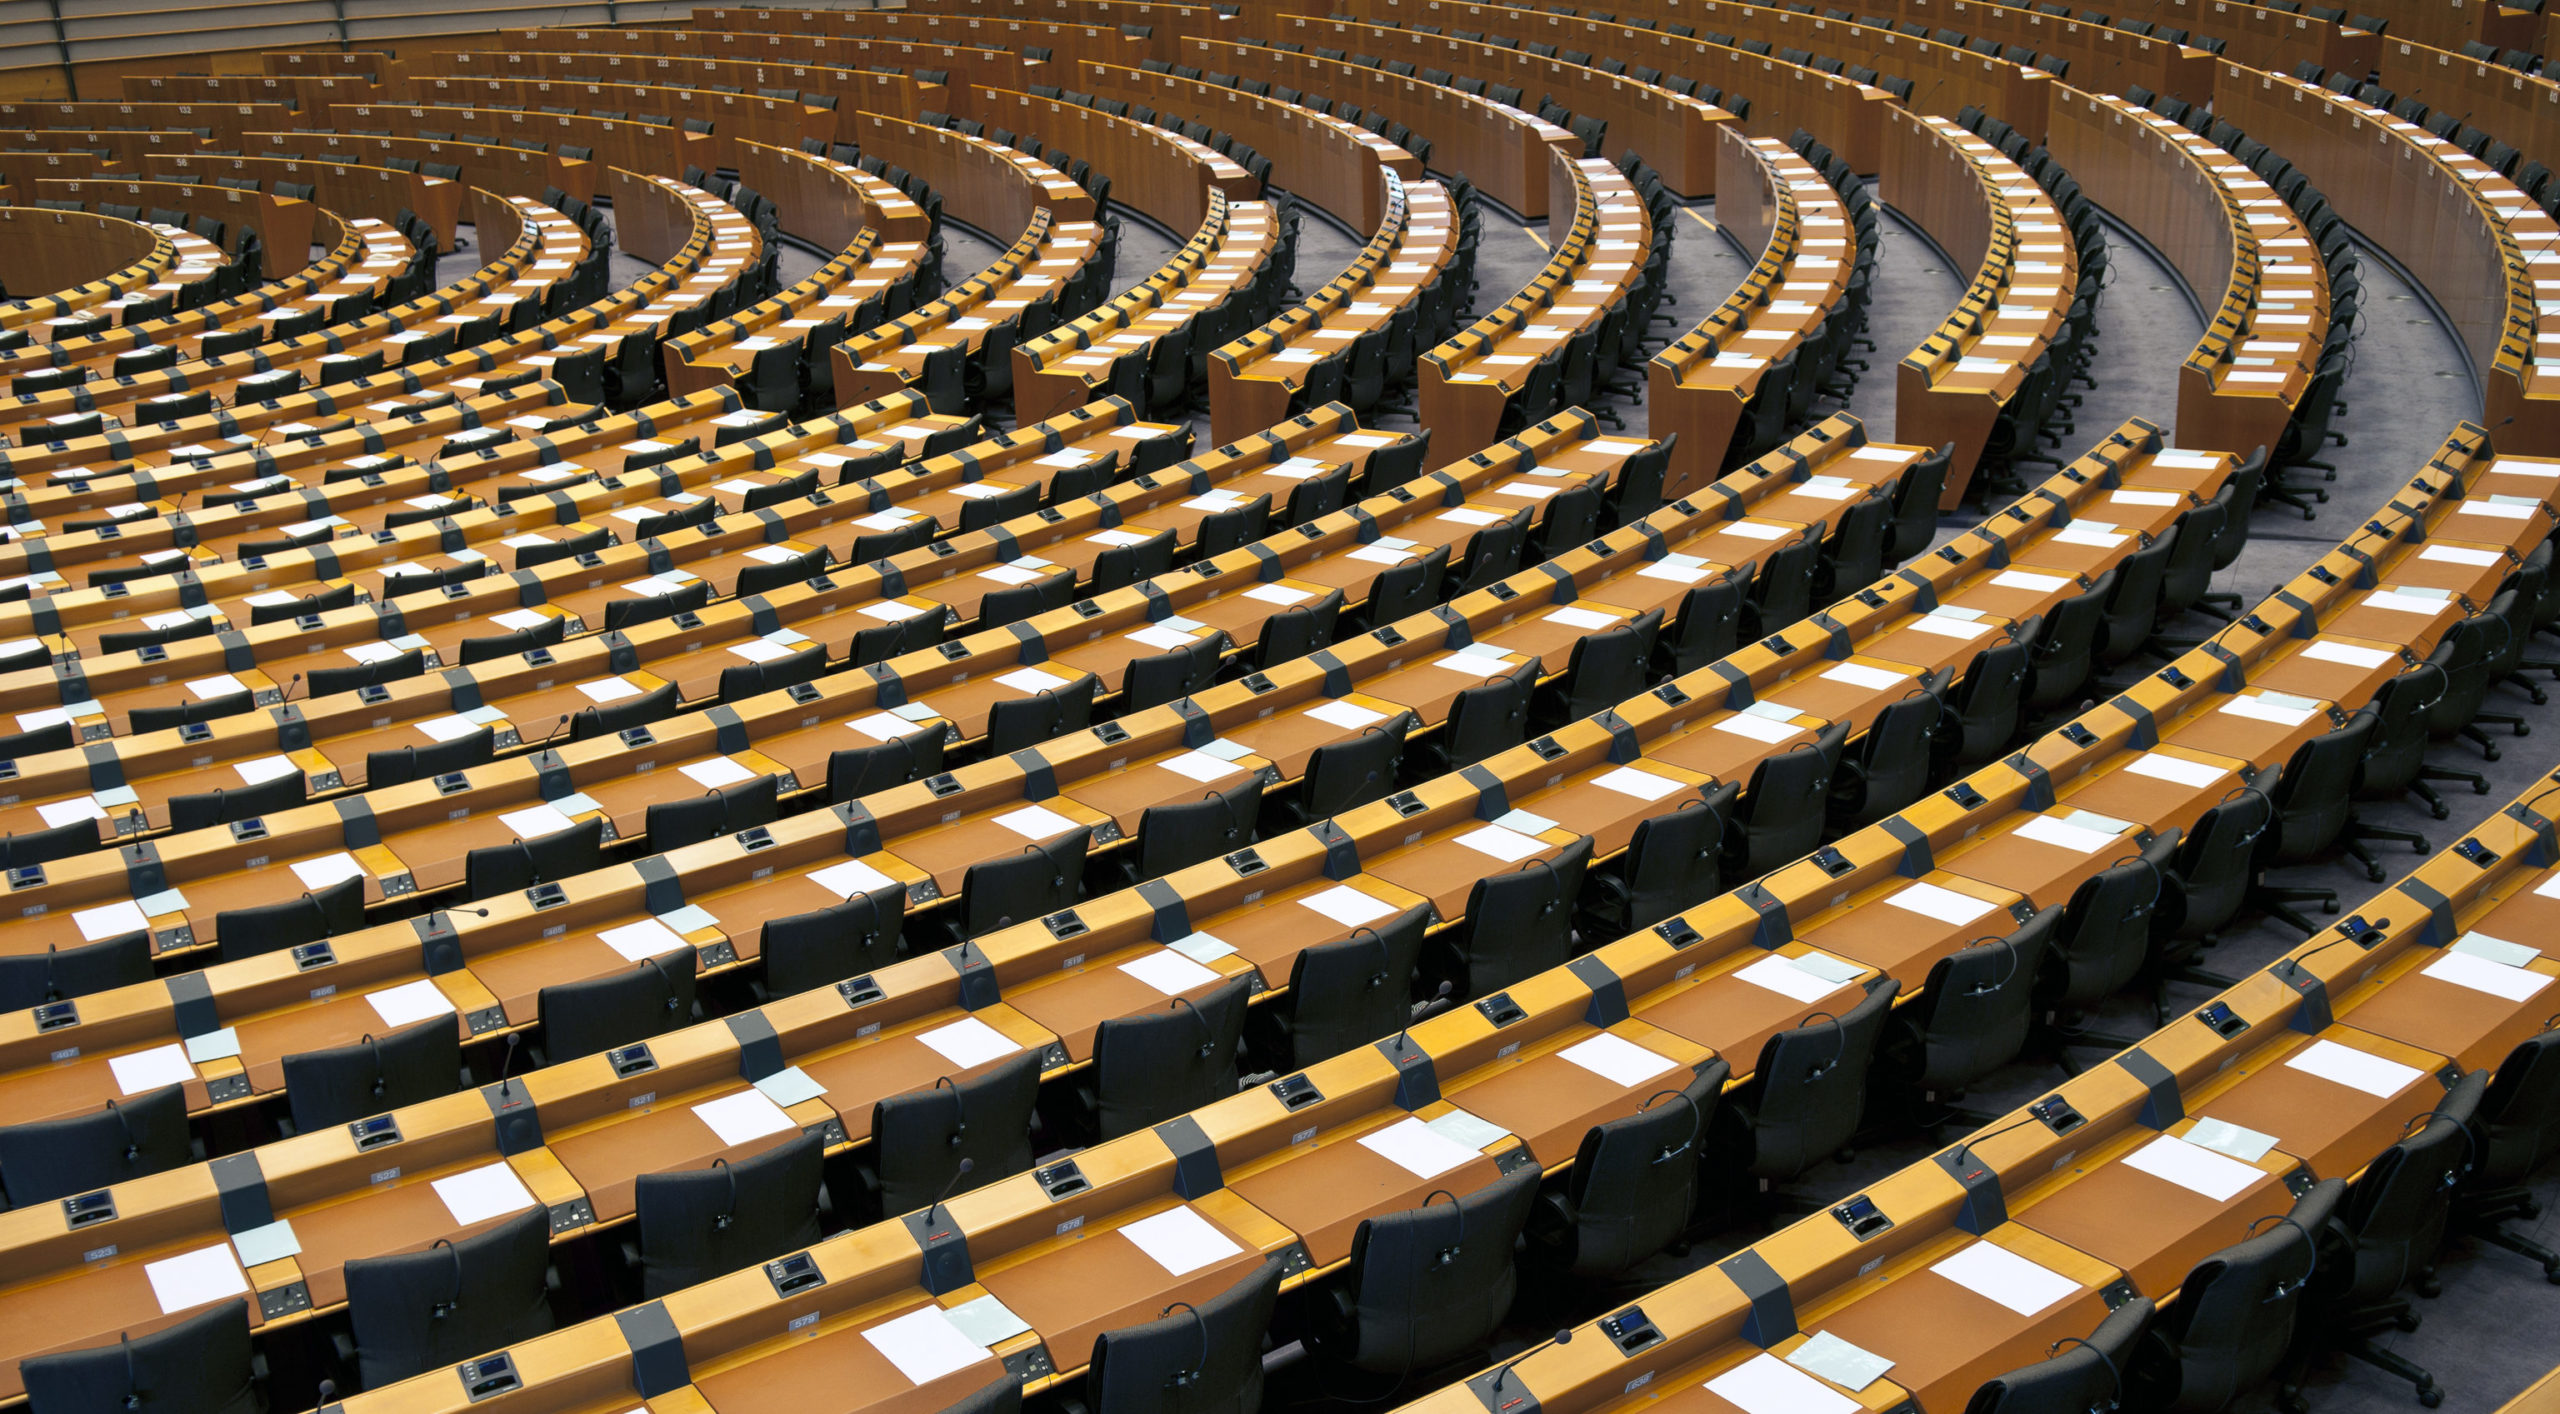 Seats in congress where legislators consider legislation on digital advertising regulation